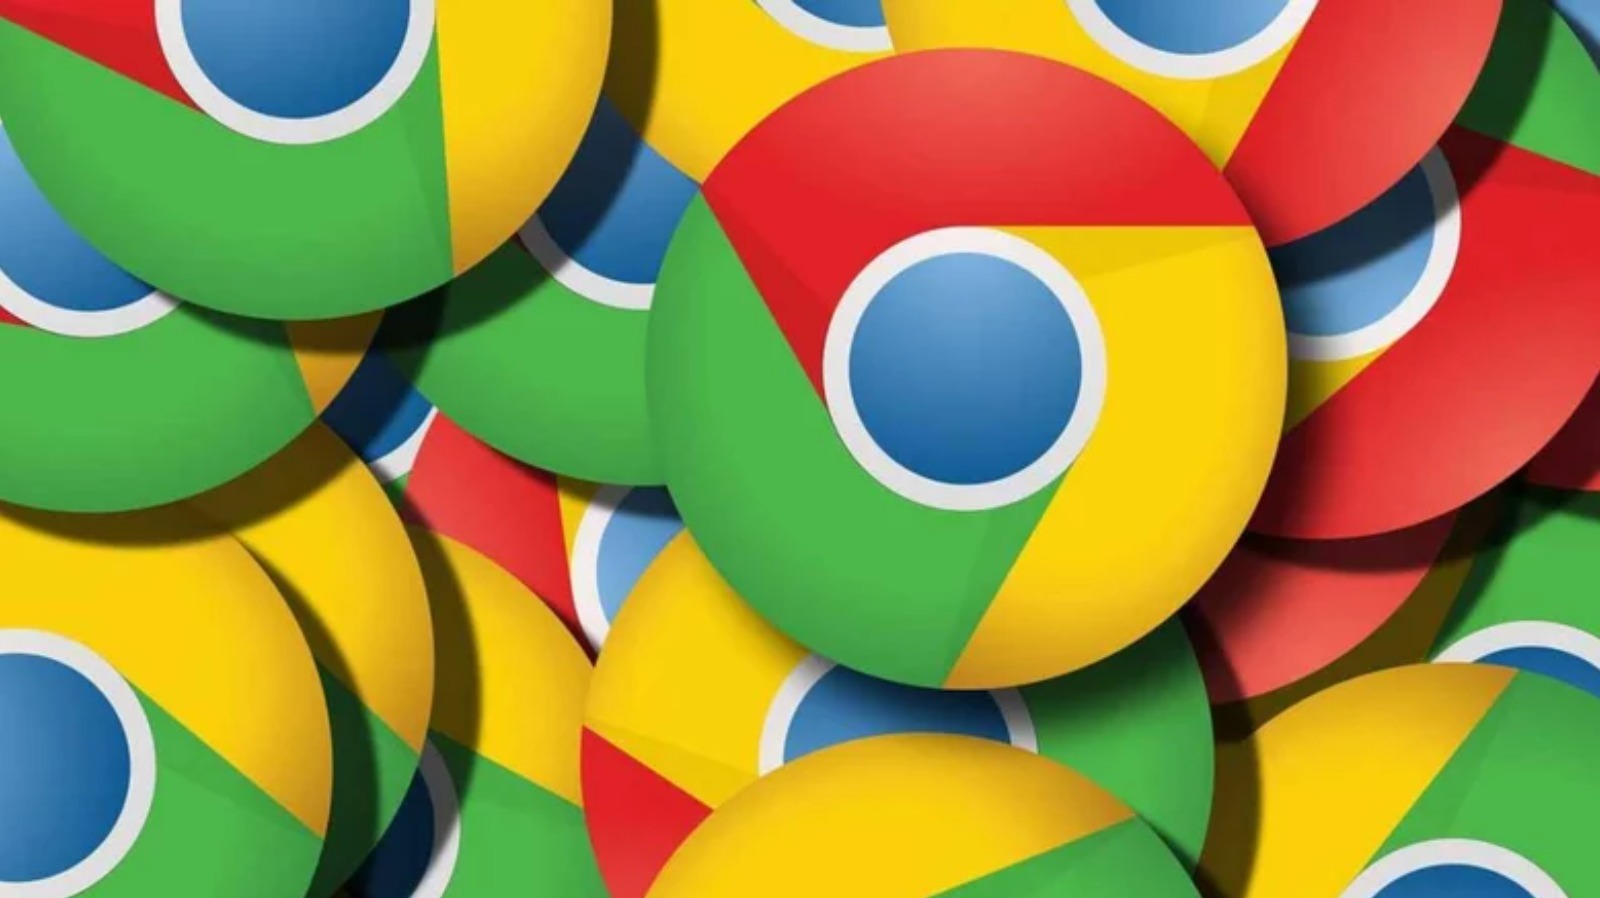 How good is Google Chrome?